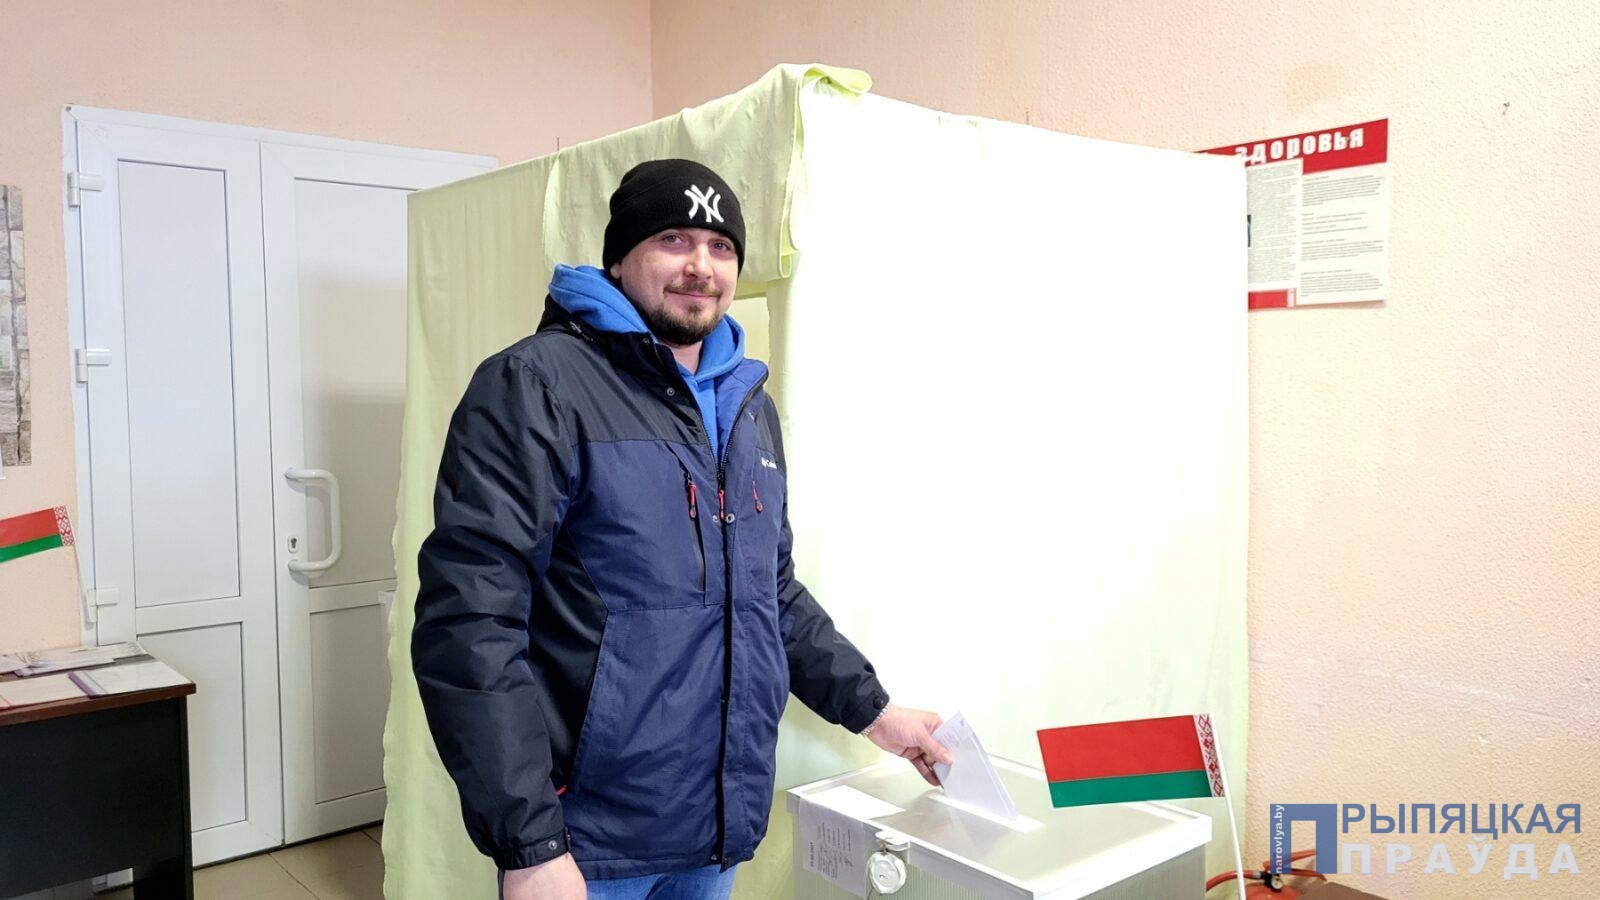 «Я голосую за будущее страны, в которой живу», — россиянин принял участие в едином дне голосования